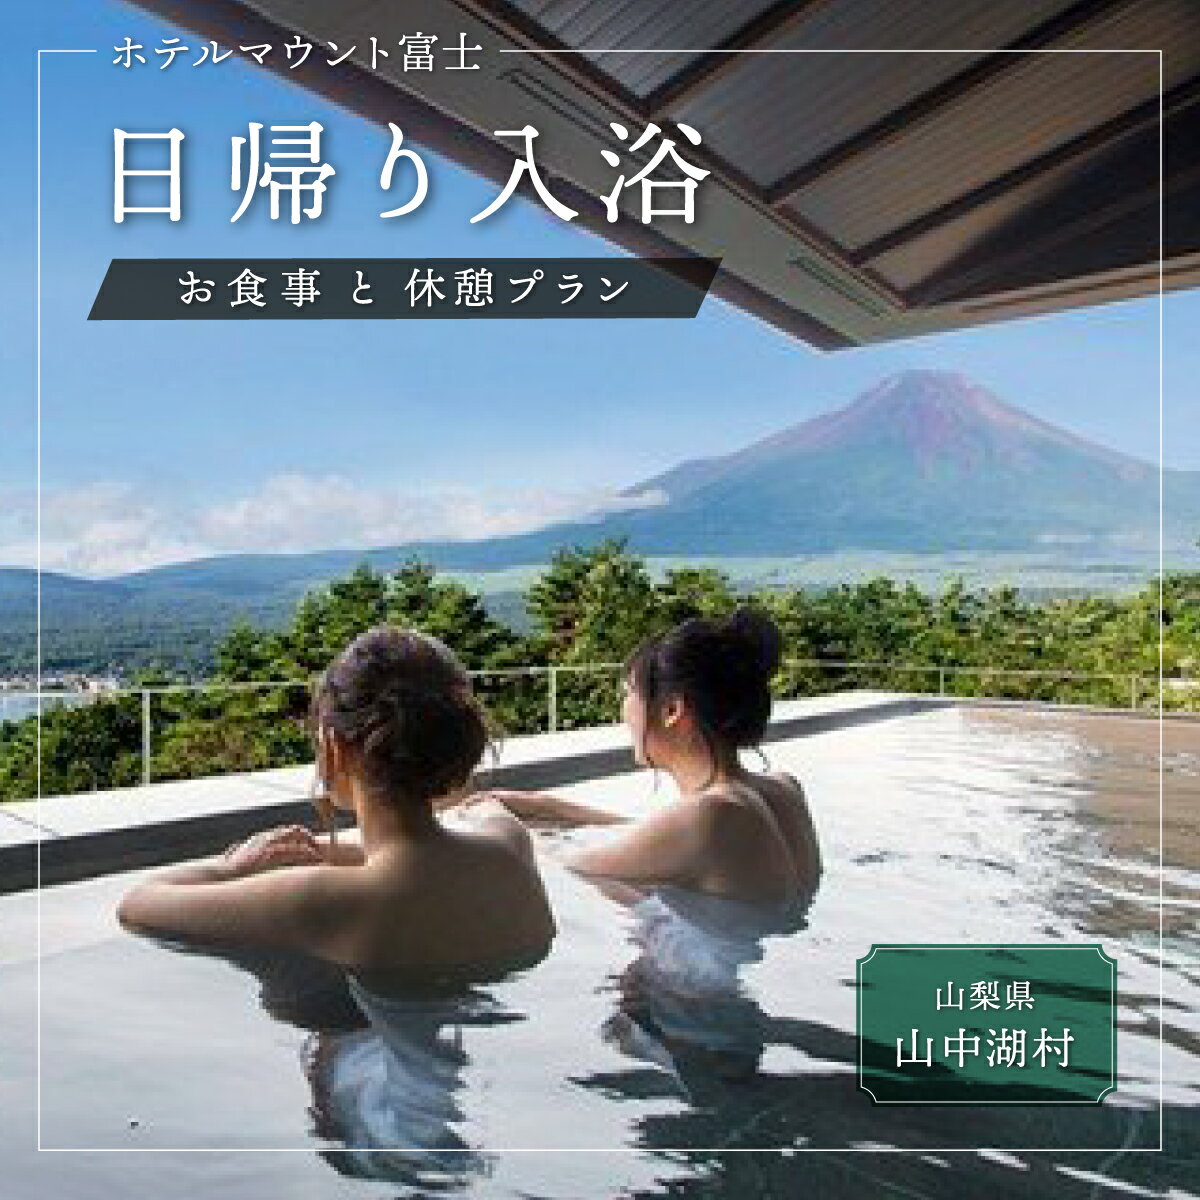 ◆ホテルマウント富士 温泉入浴と お食事・休憩プラン(2名様)土日限定プラン